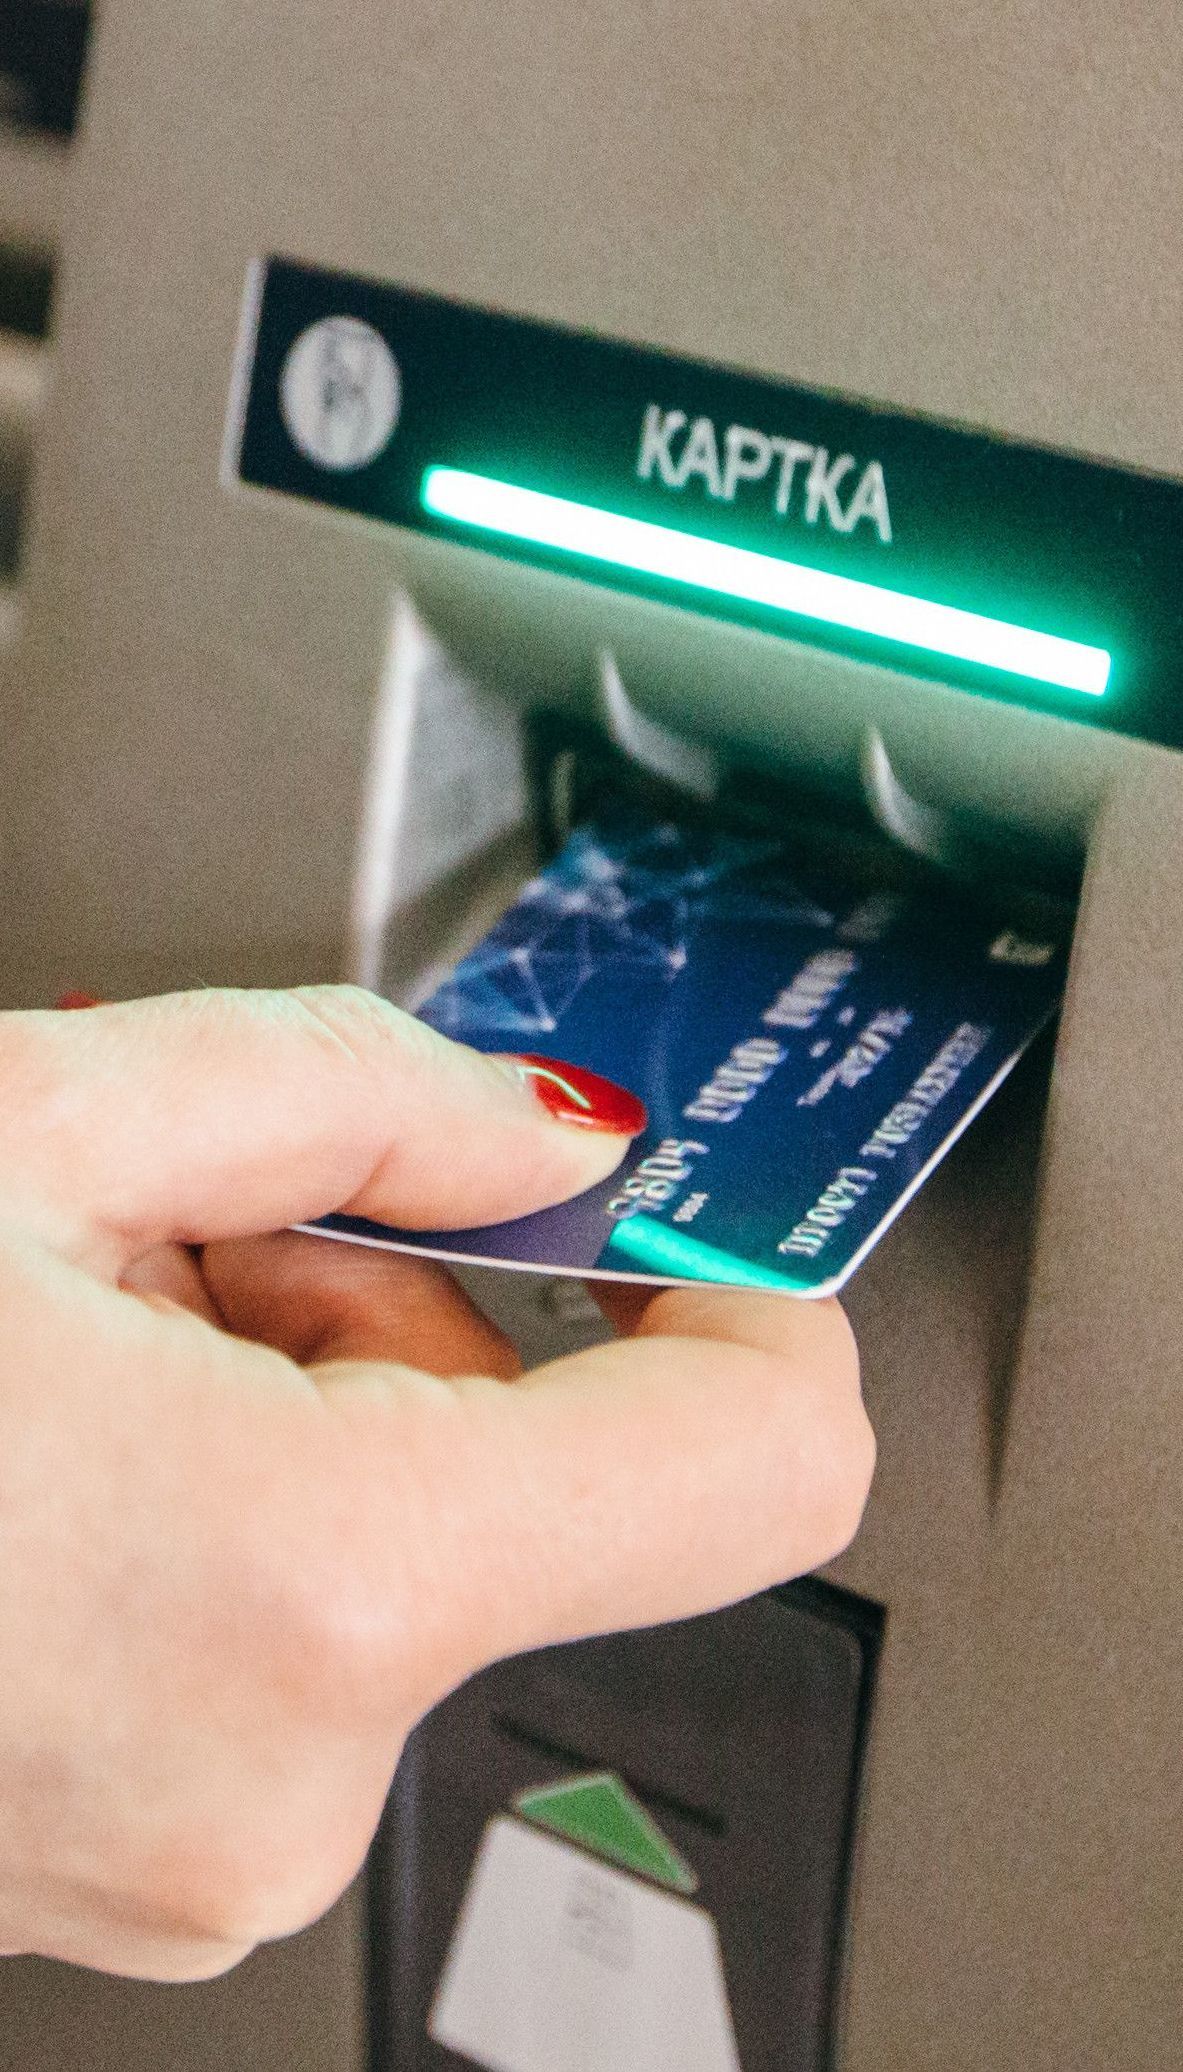 Обмен валют в банкоматах: в Украине заработали новые правила финансовых операций